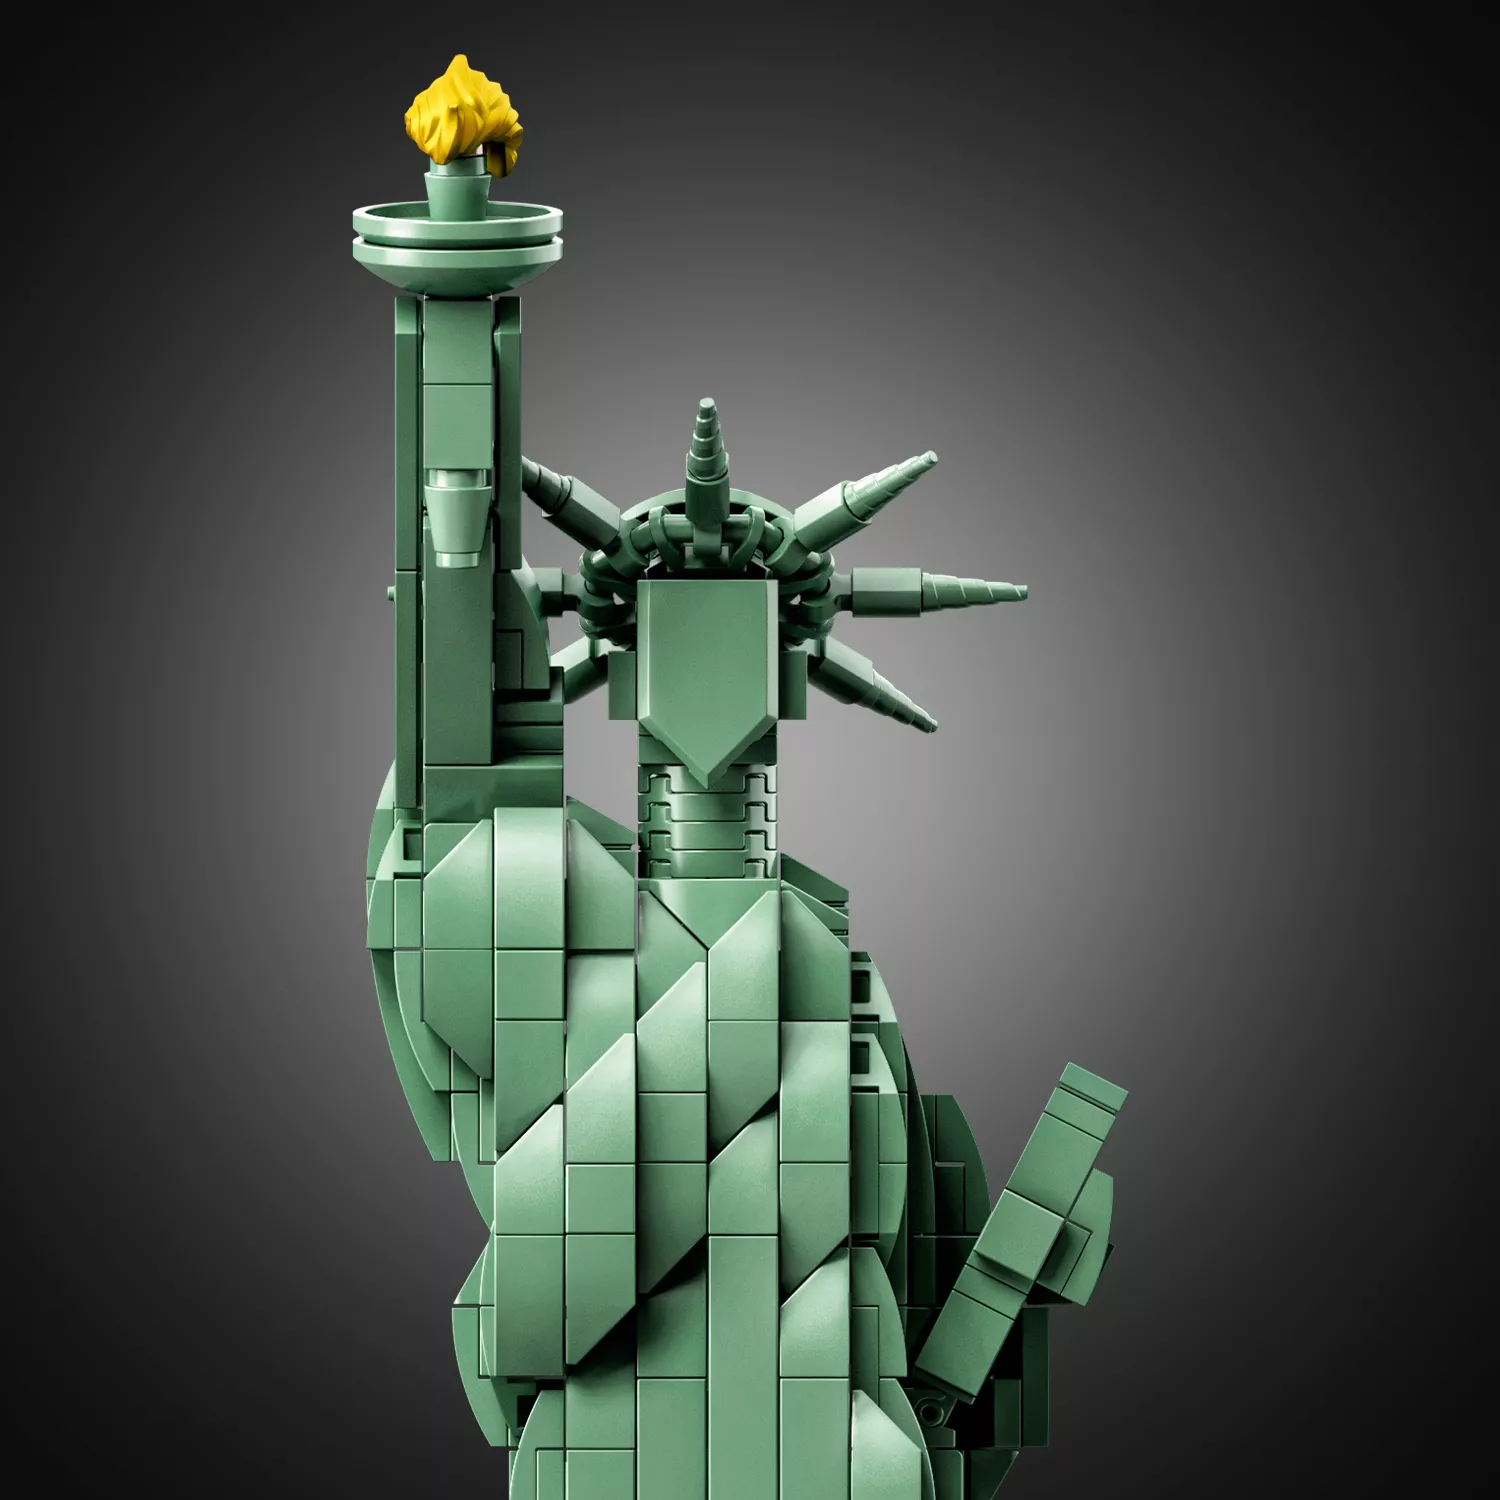 LEGO 21042 Architecture Freiheitsstatue